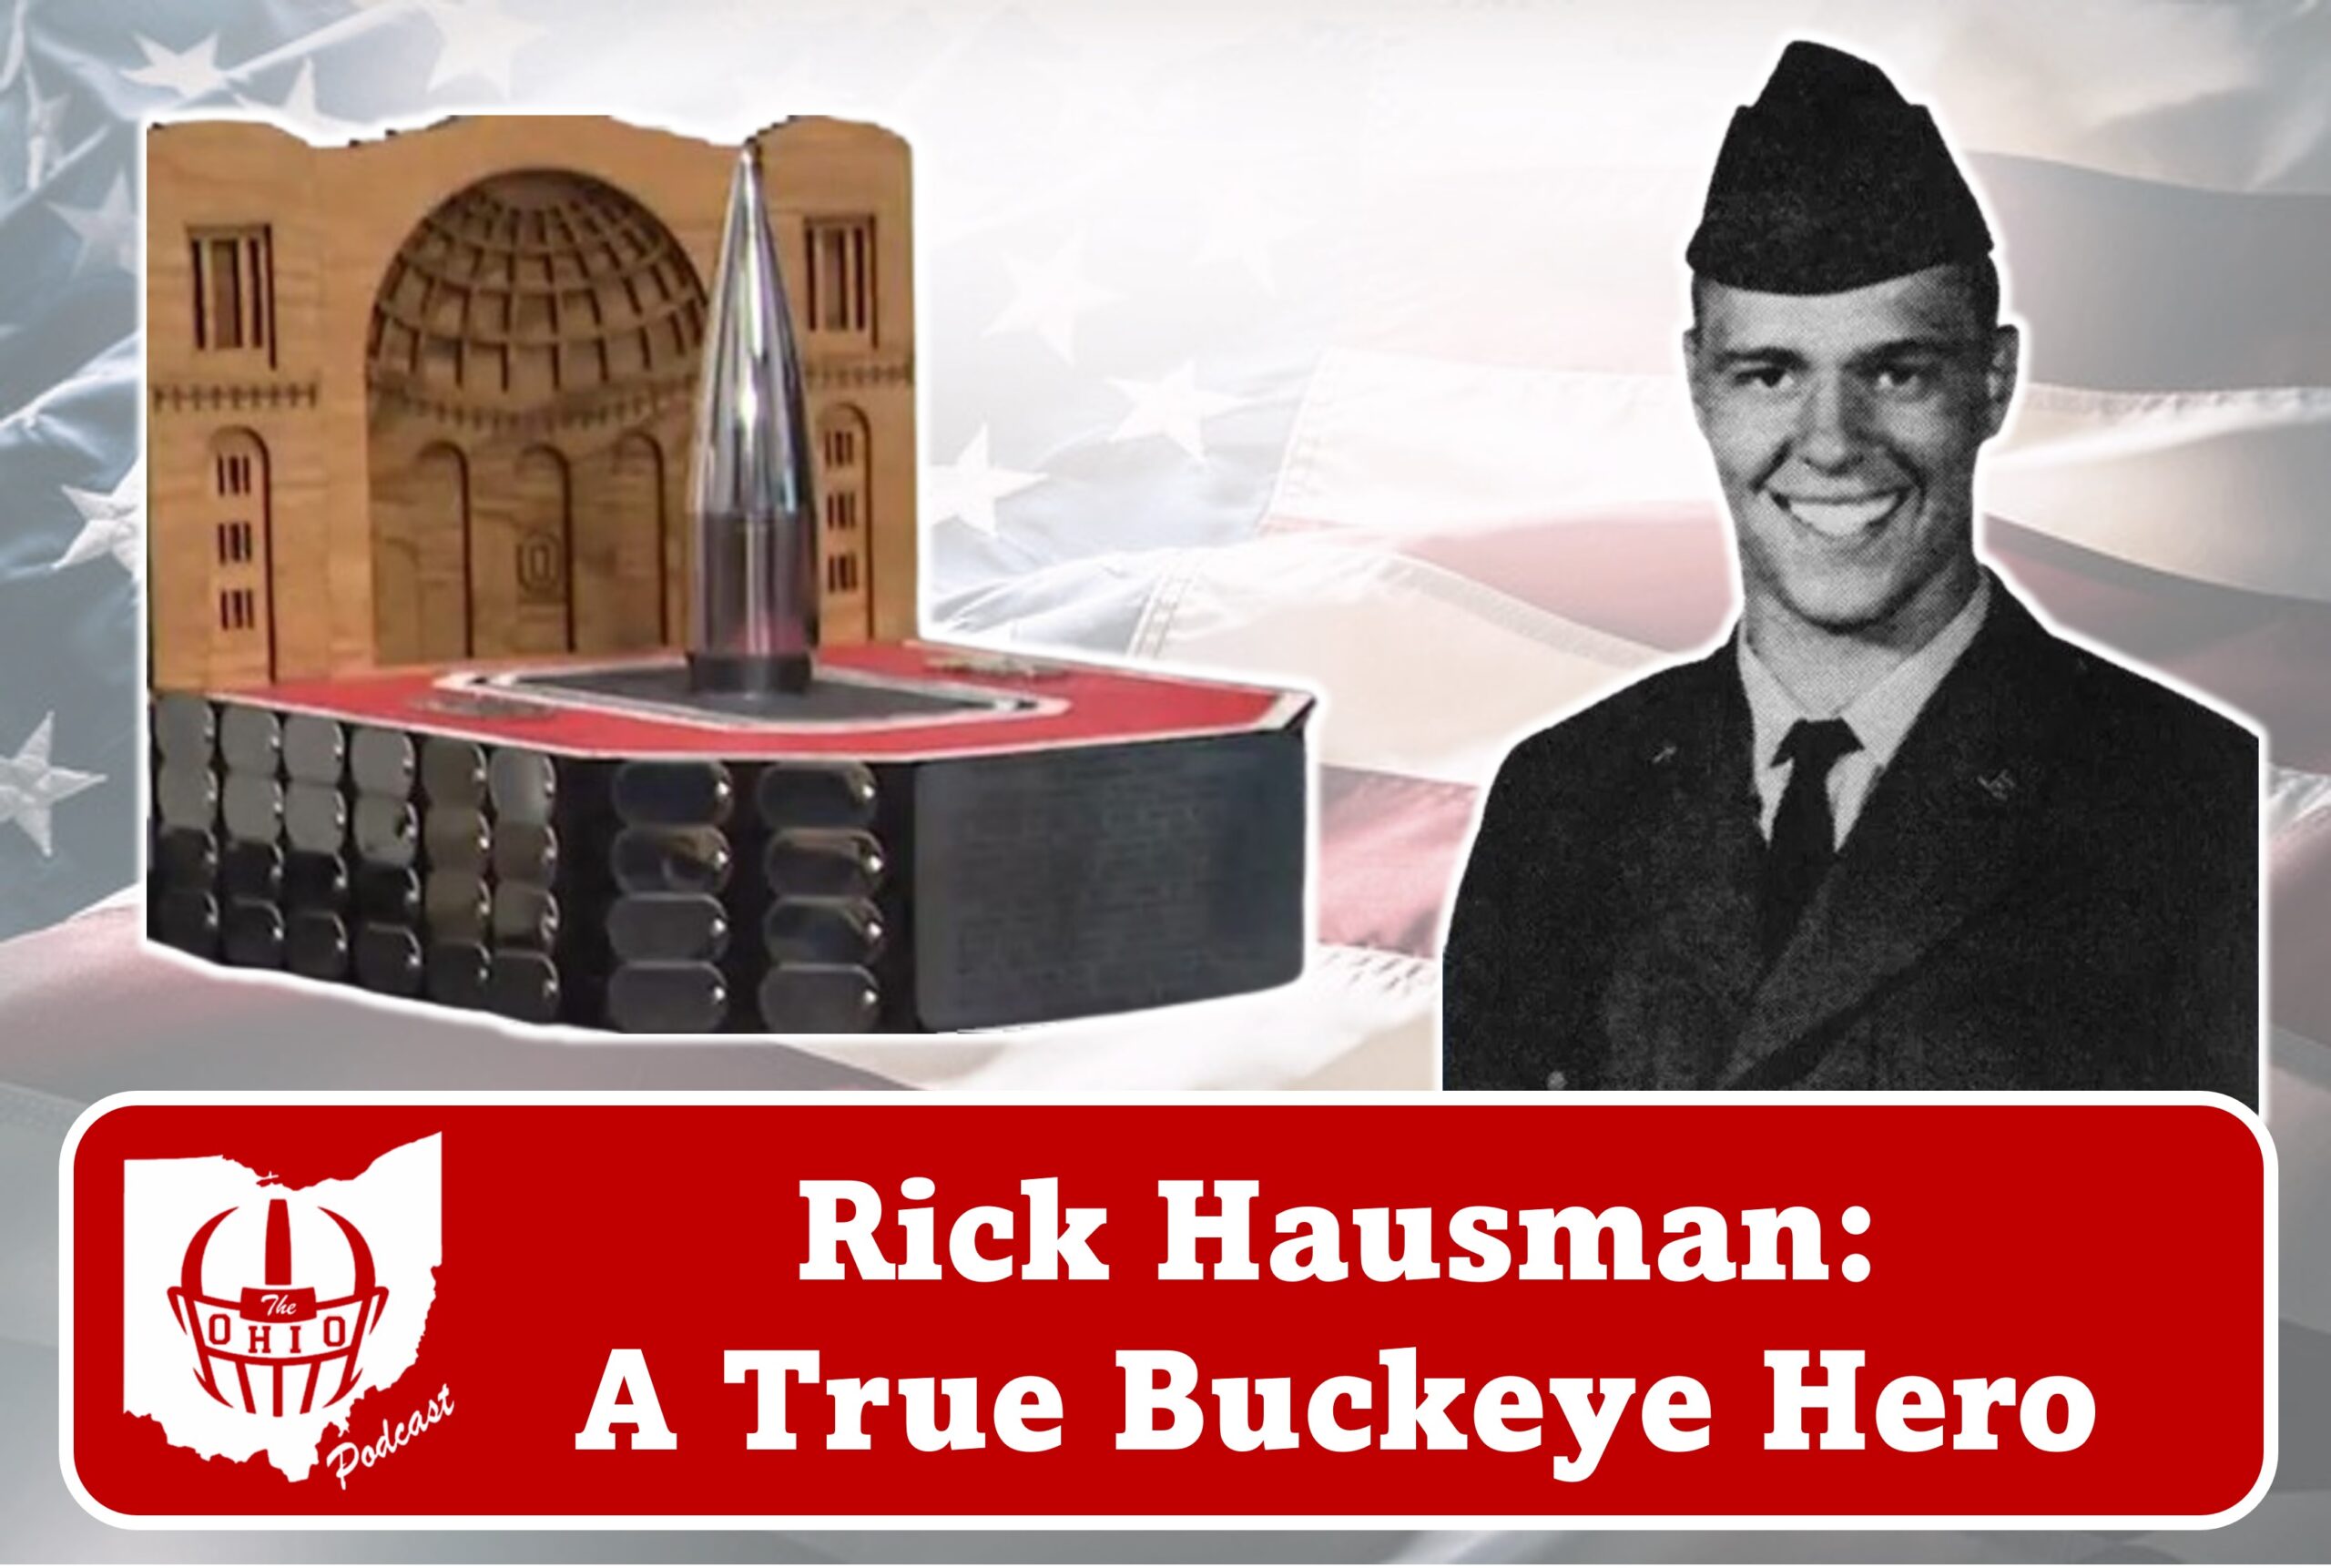 Rick Hausman: A True Buckeye Hero